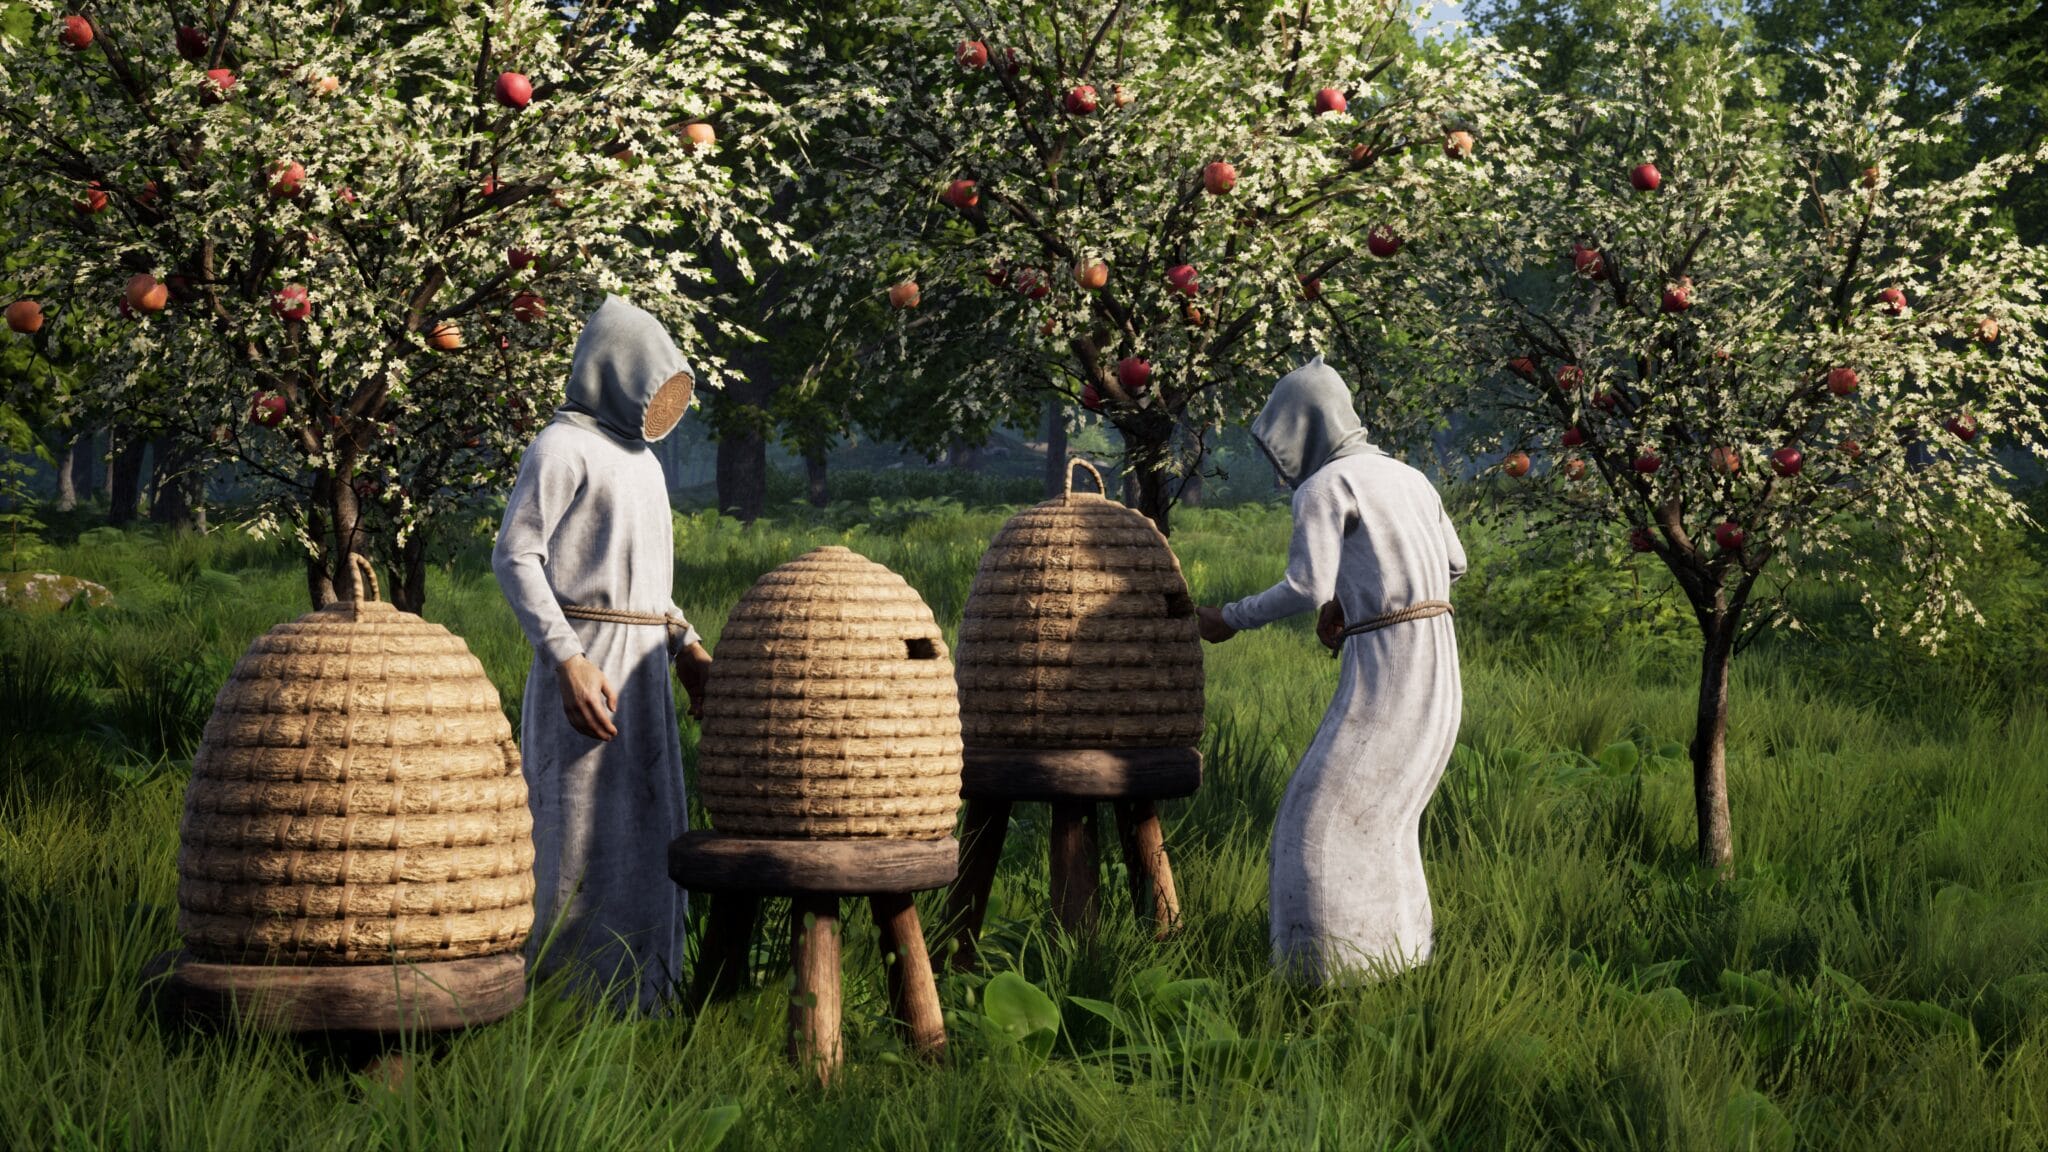 Una de las primeras novedades fue la apicultura, por supuesto sólo con el equipo adecuado. Incluso en la Edad Media, las picaduras de abeja eran desagradables